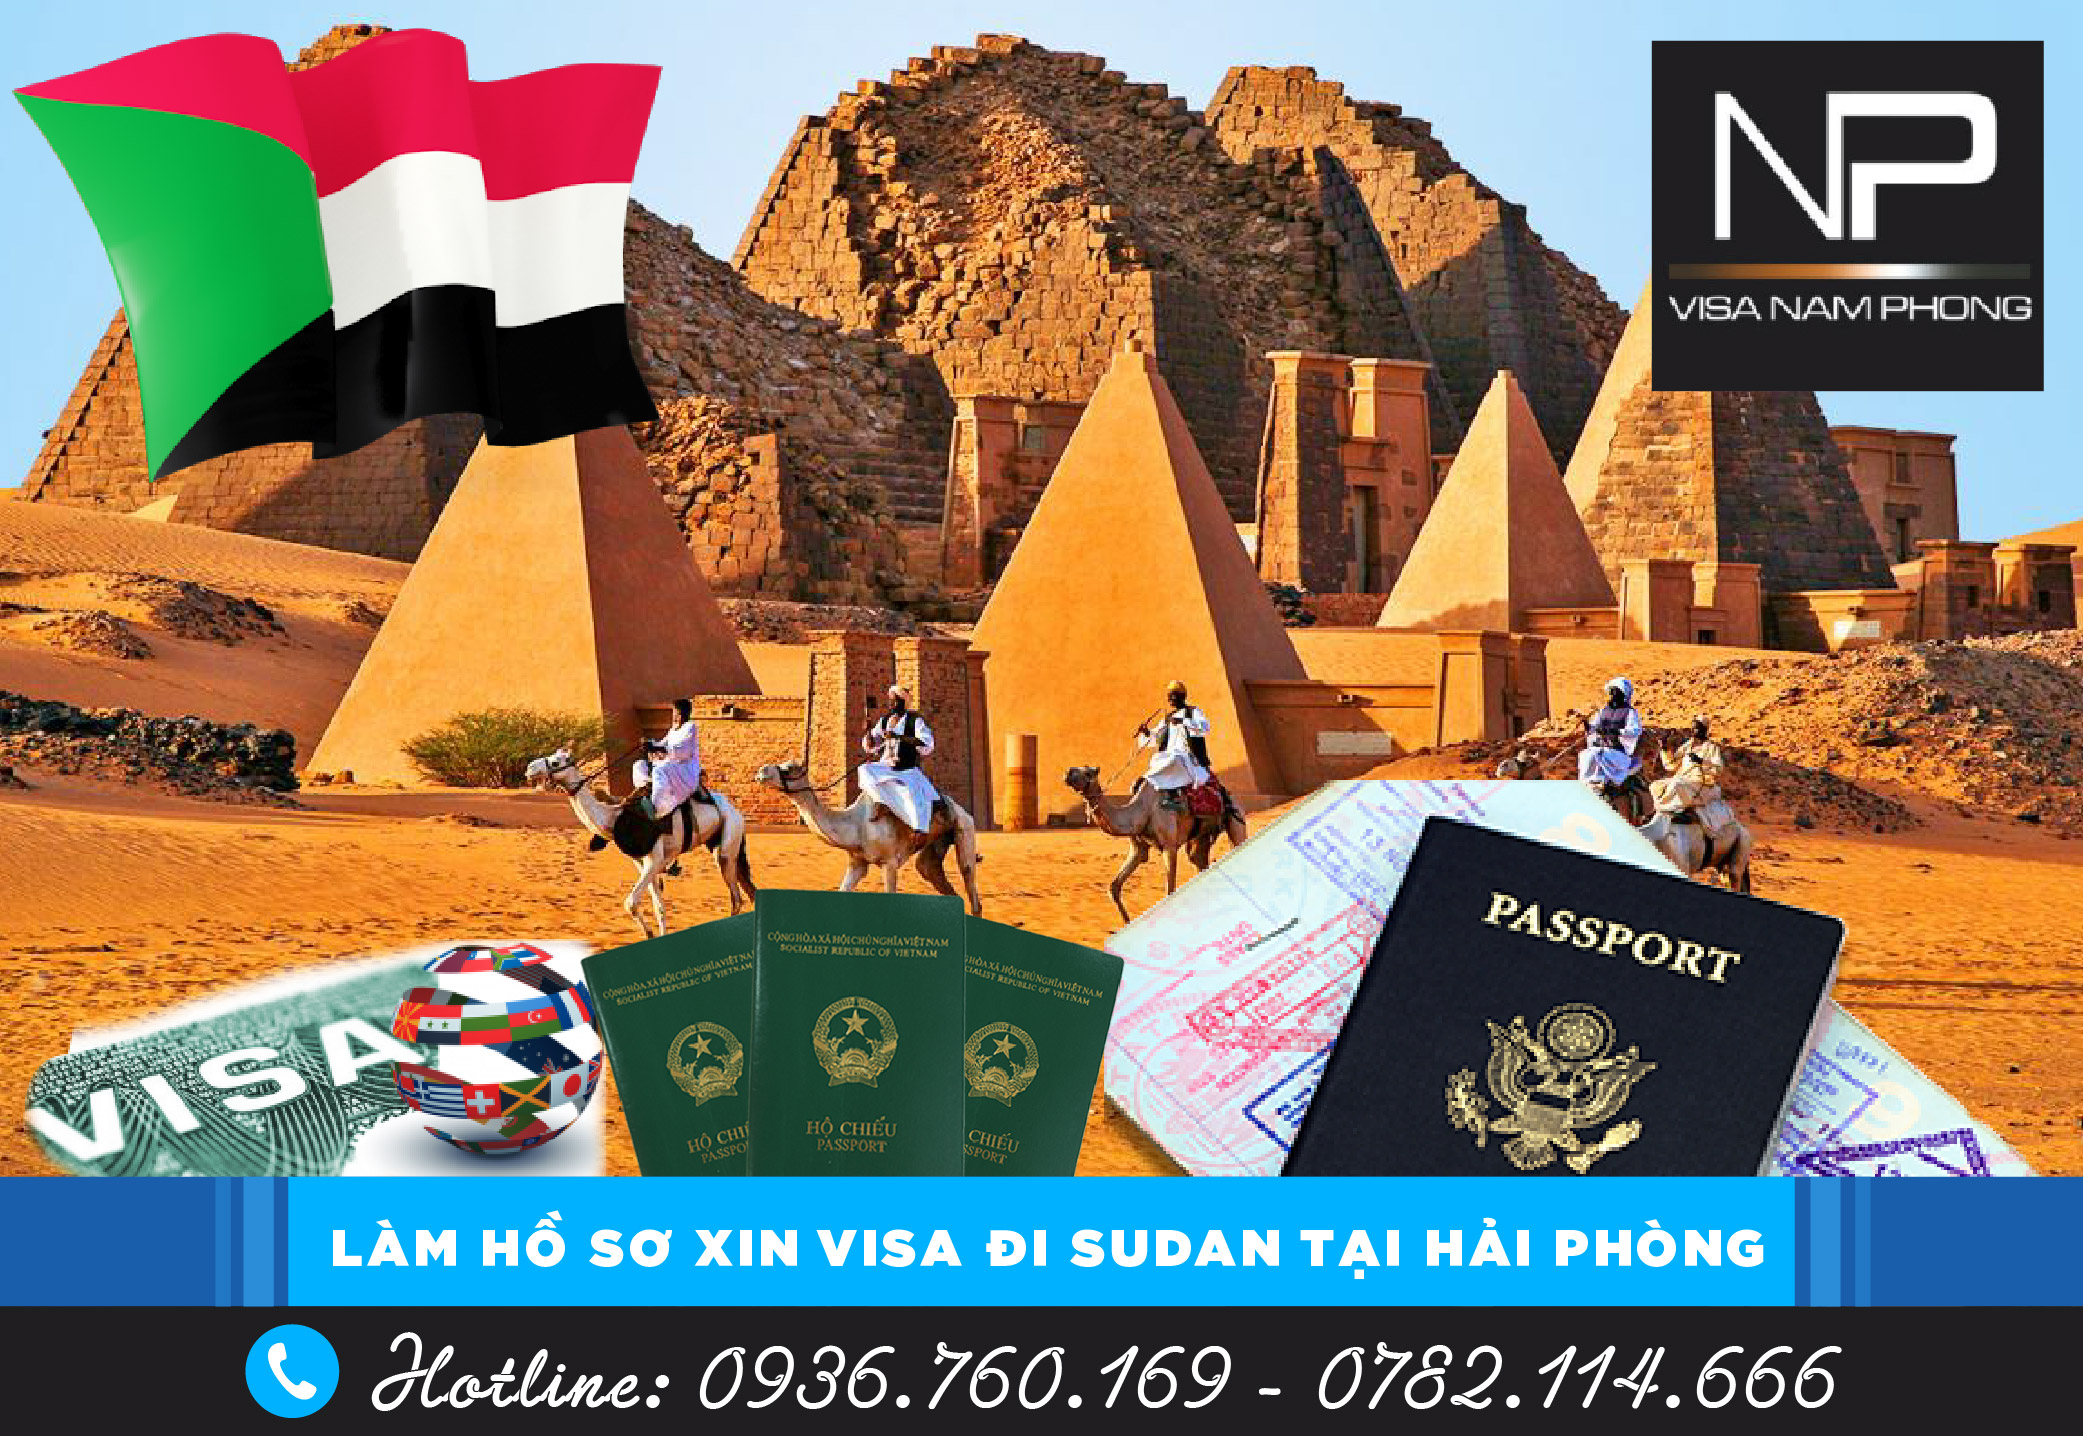 LÀM HỒ SƠ VISA ĐI SUDAN TẠI HẢI PHÒNG